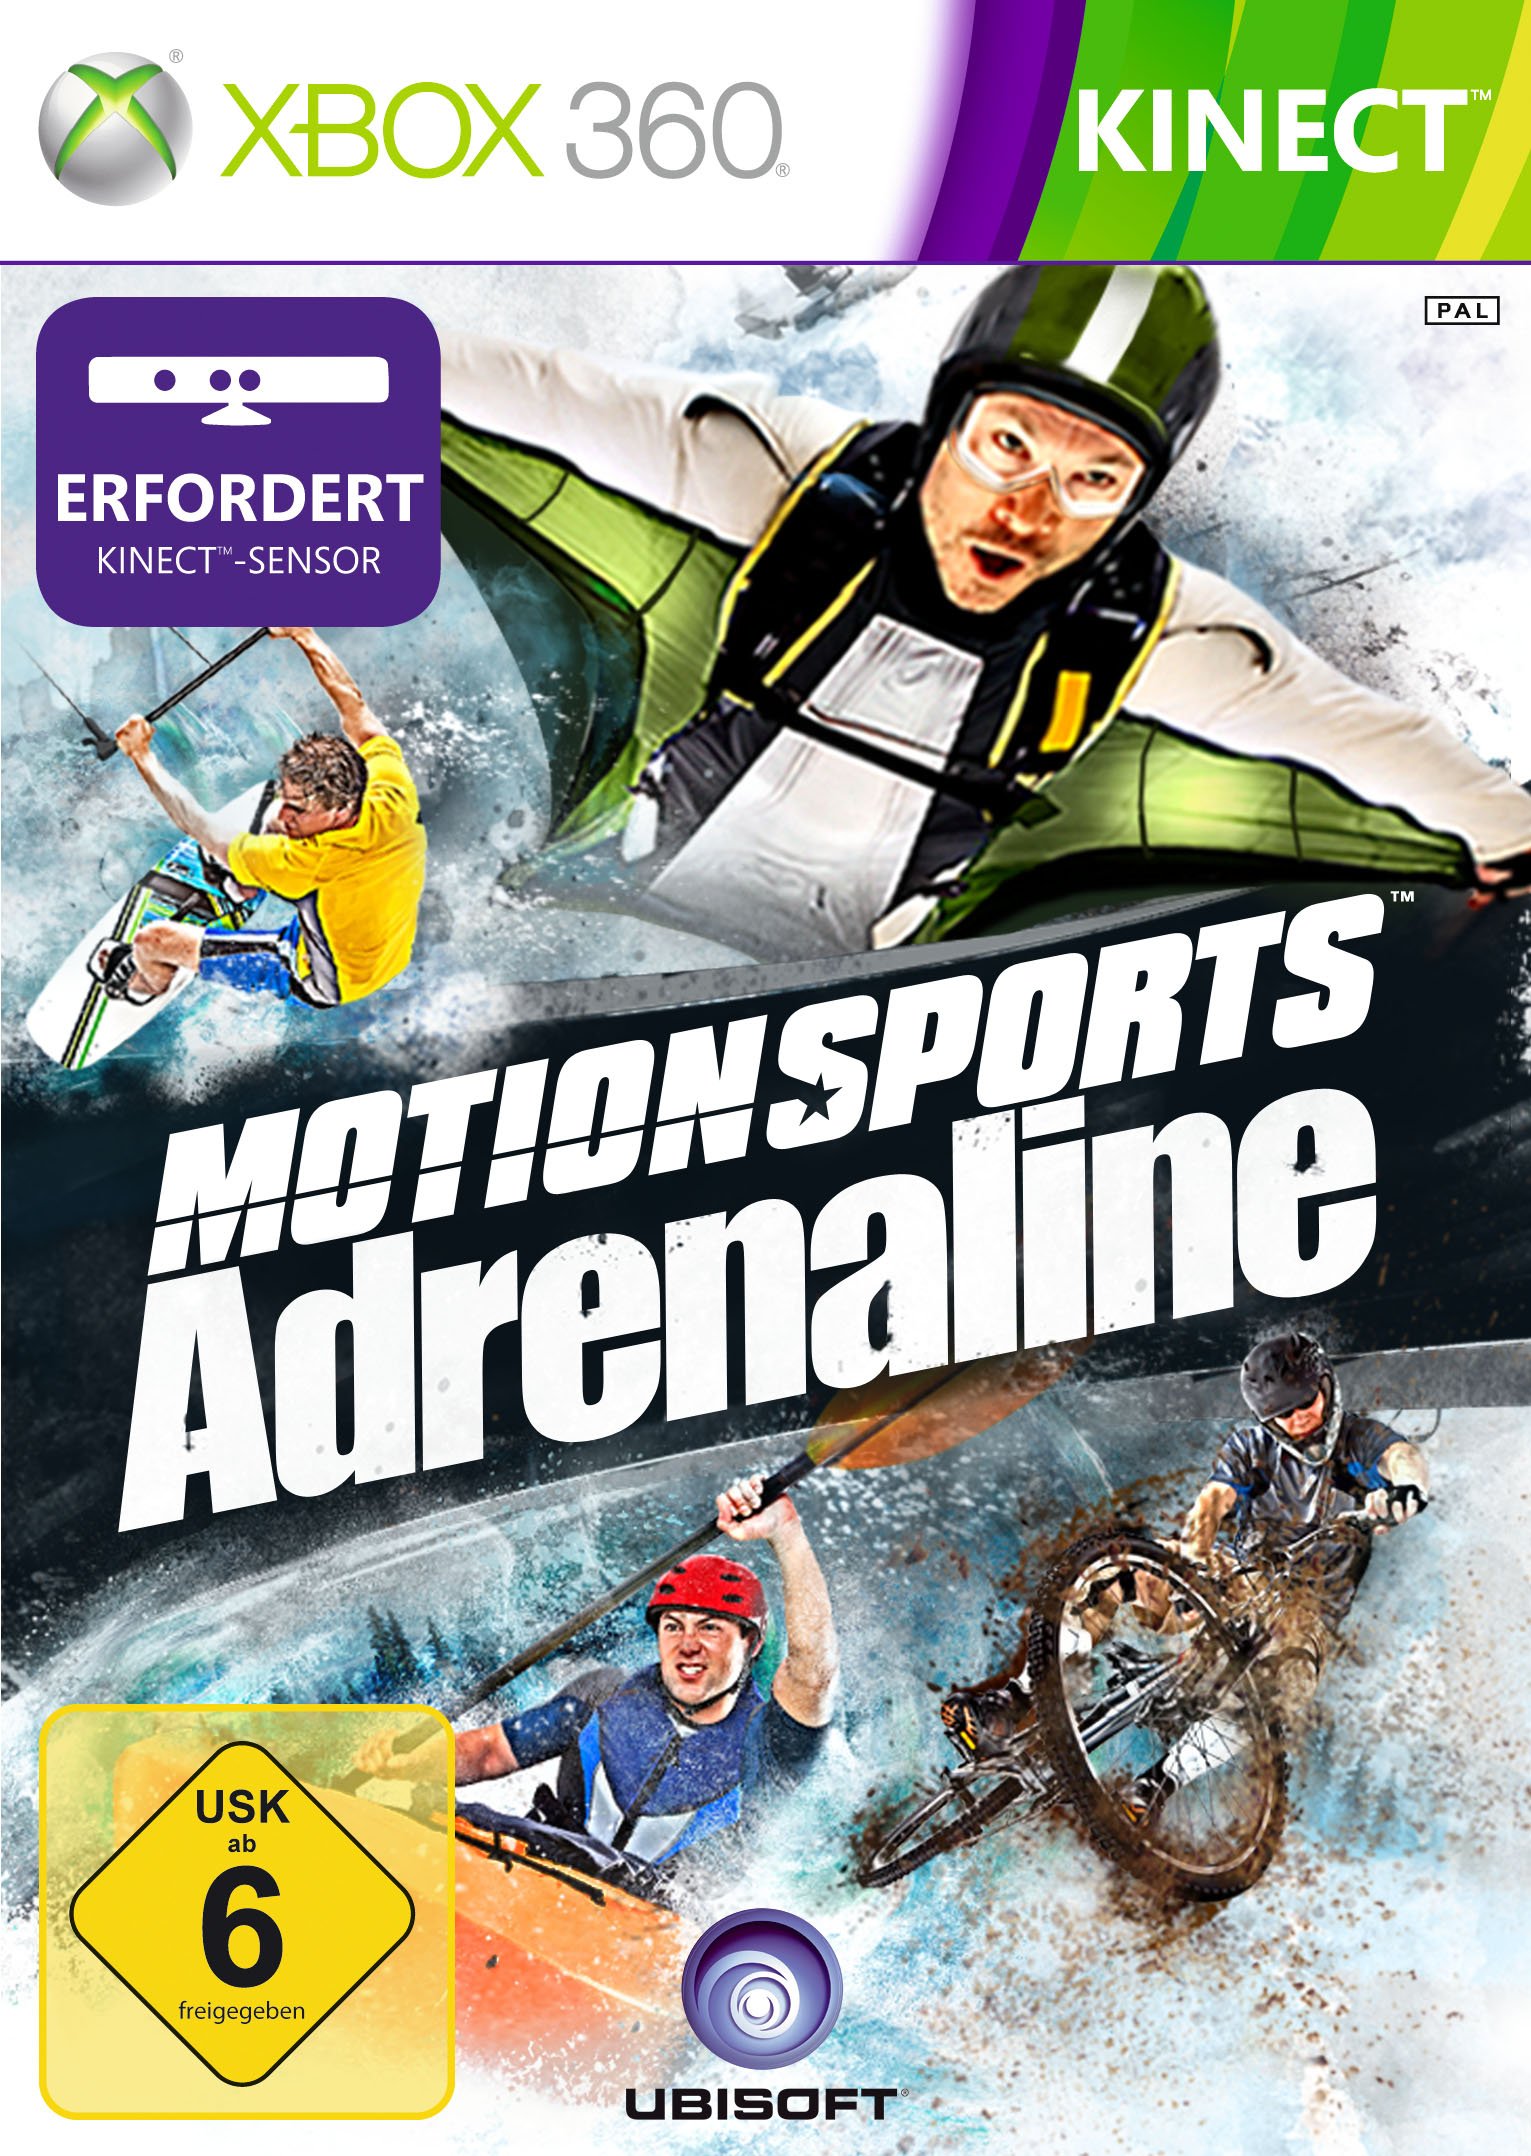 Motion Sports Adrenaline (Kinect erforderlich)